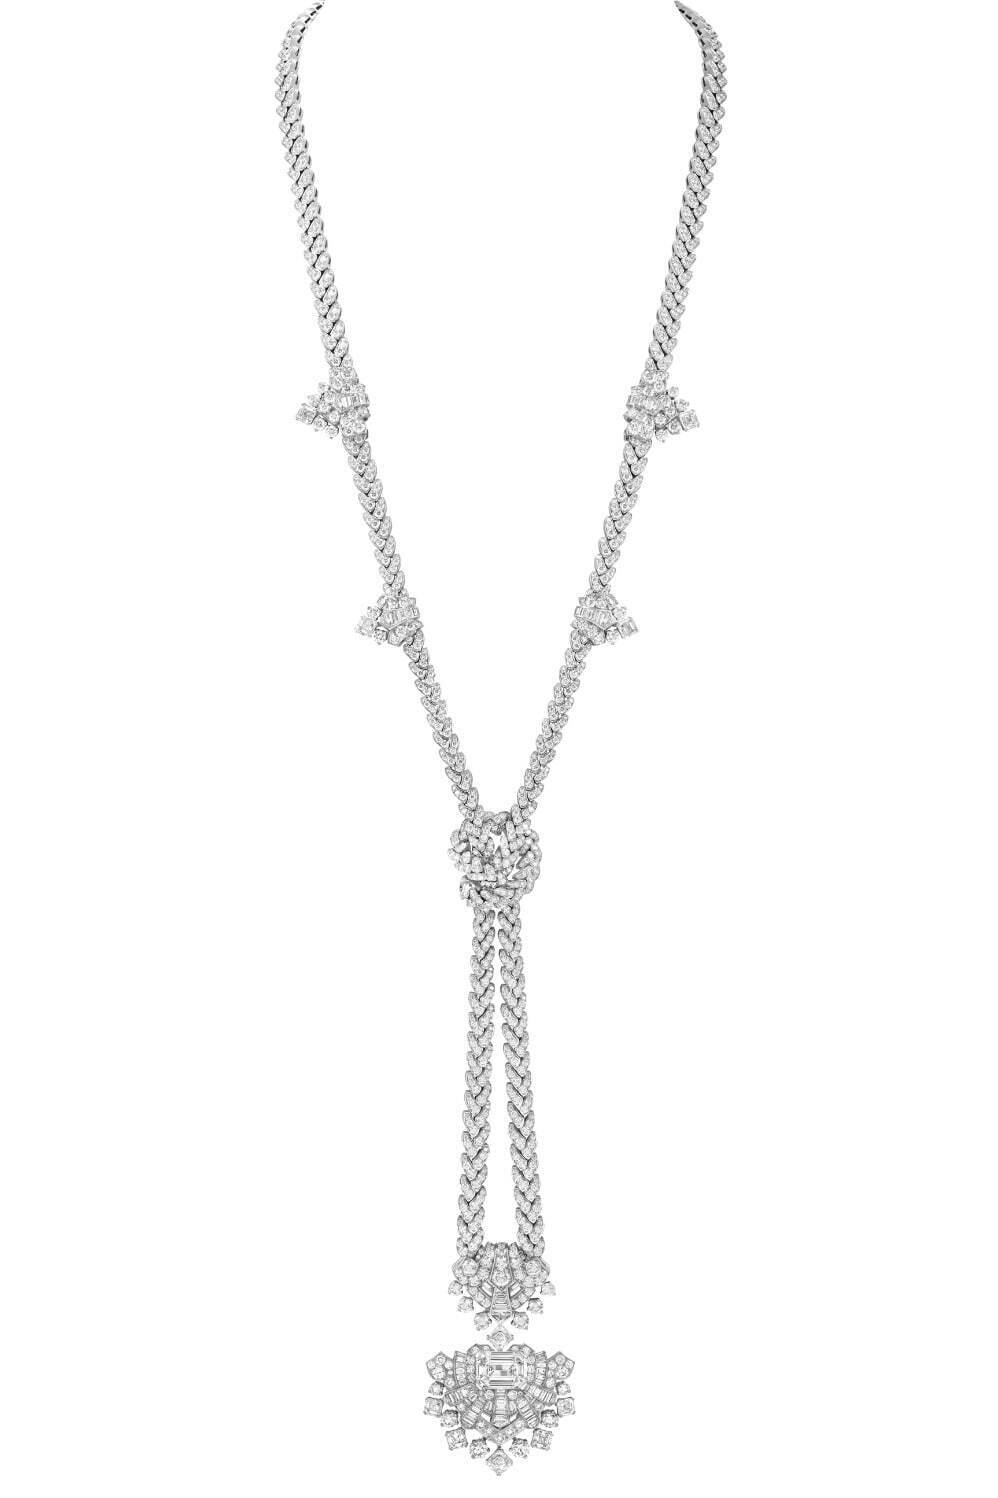 形を変えるロングネックレス「シモネッタ ネックレス」
エメラルドカットダイヤモンド(DFL、タイプ2A、7.88カラット)、ダイヤモンド